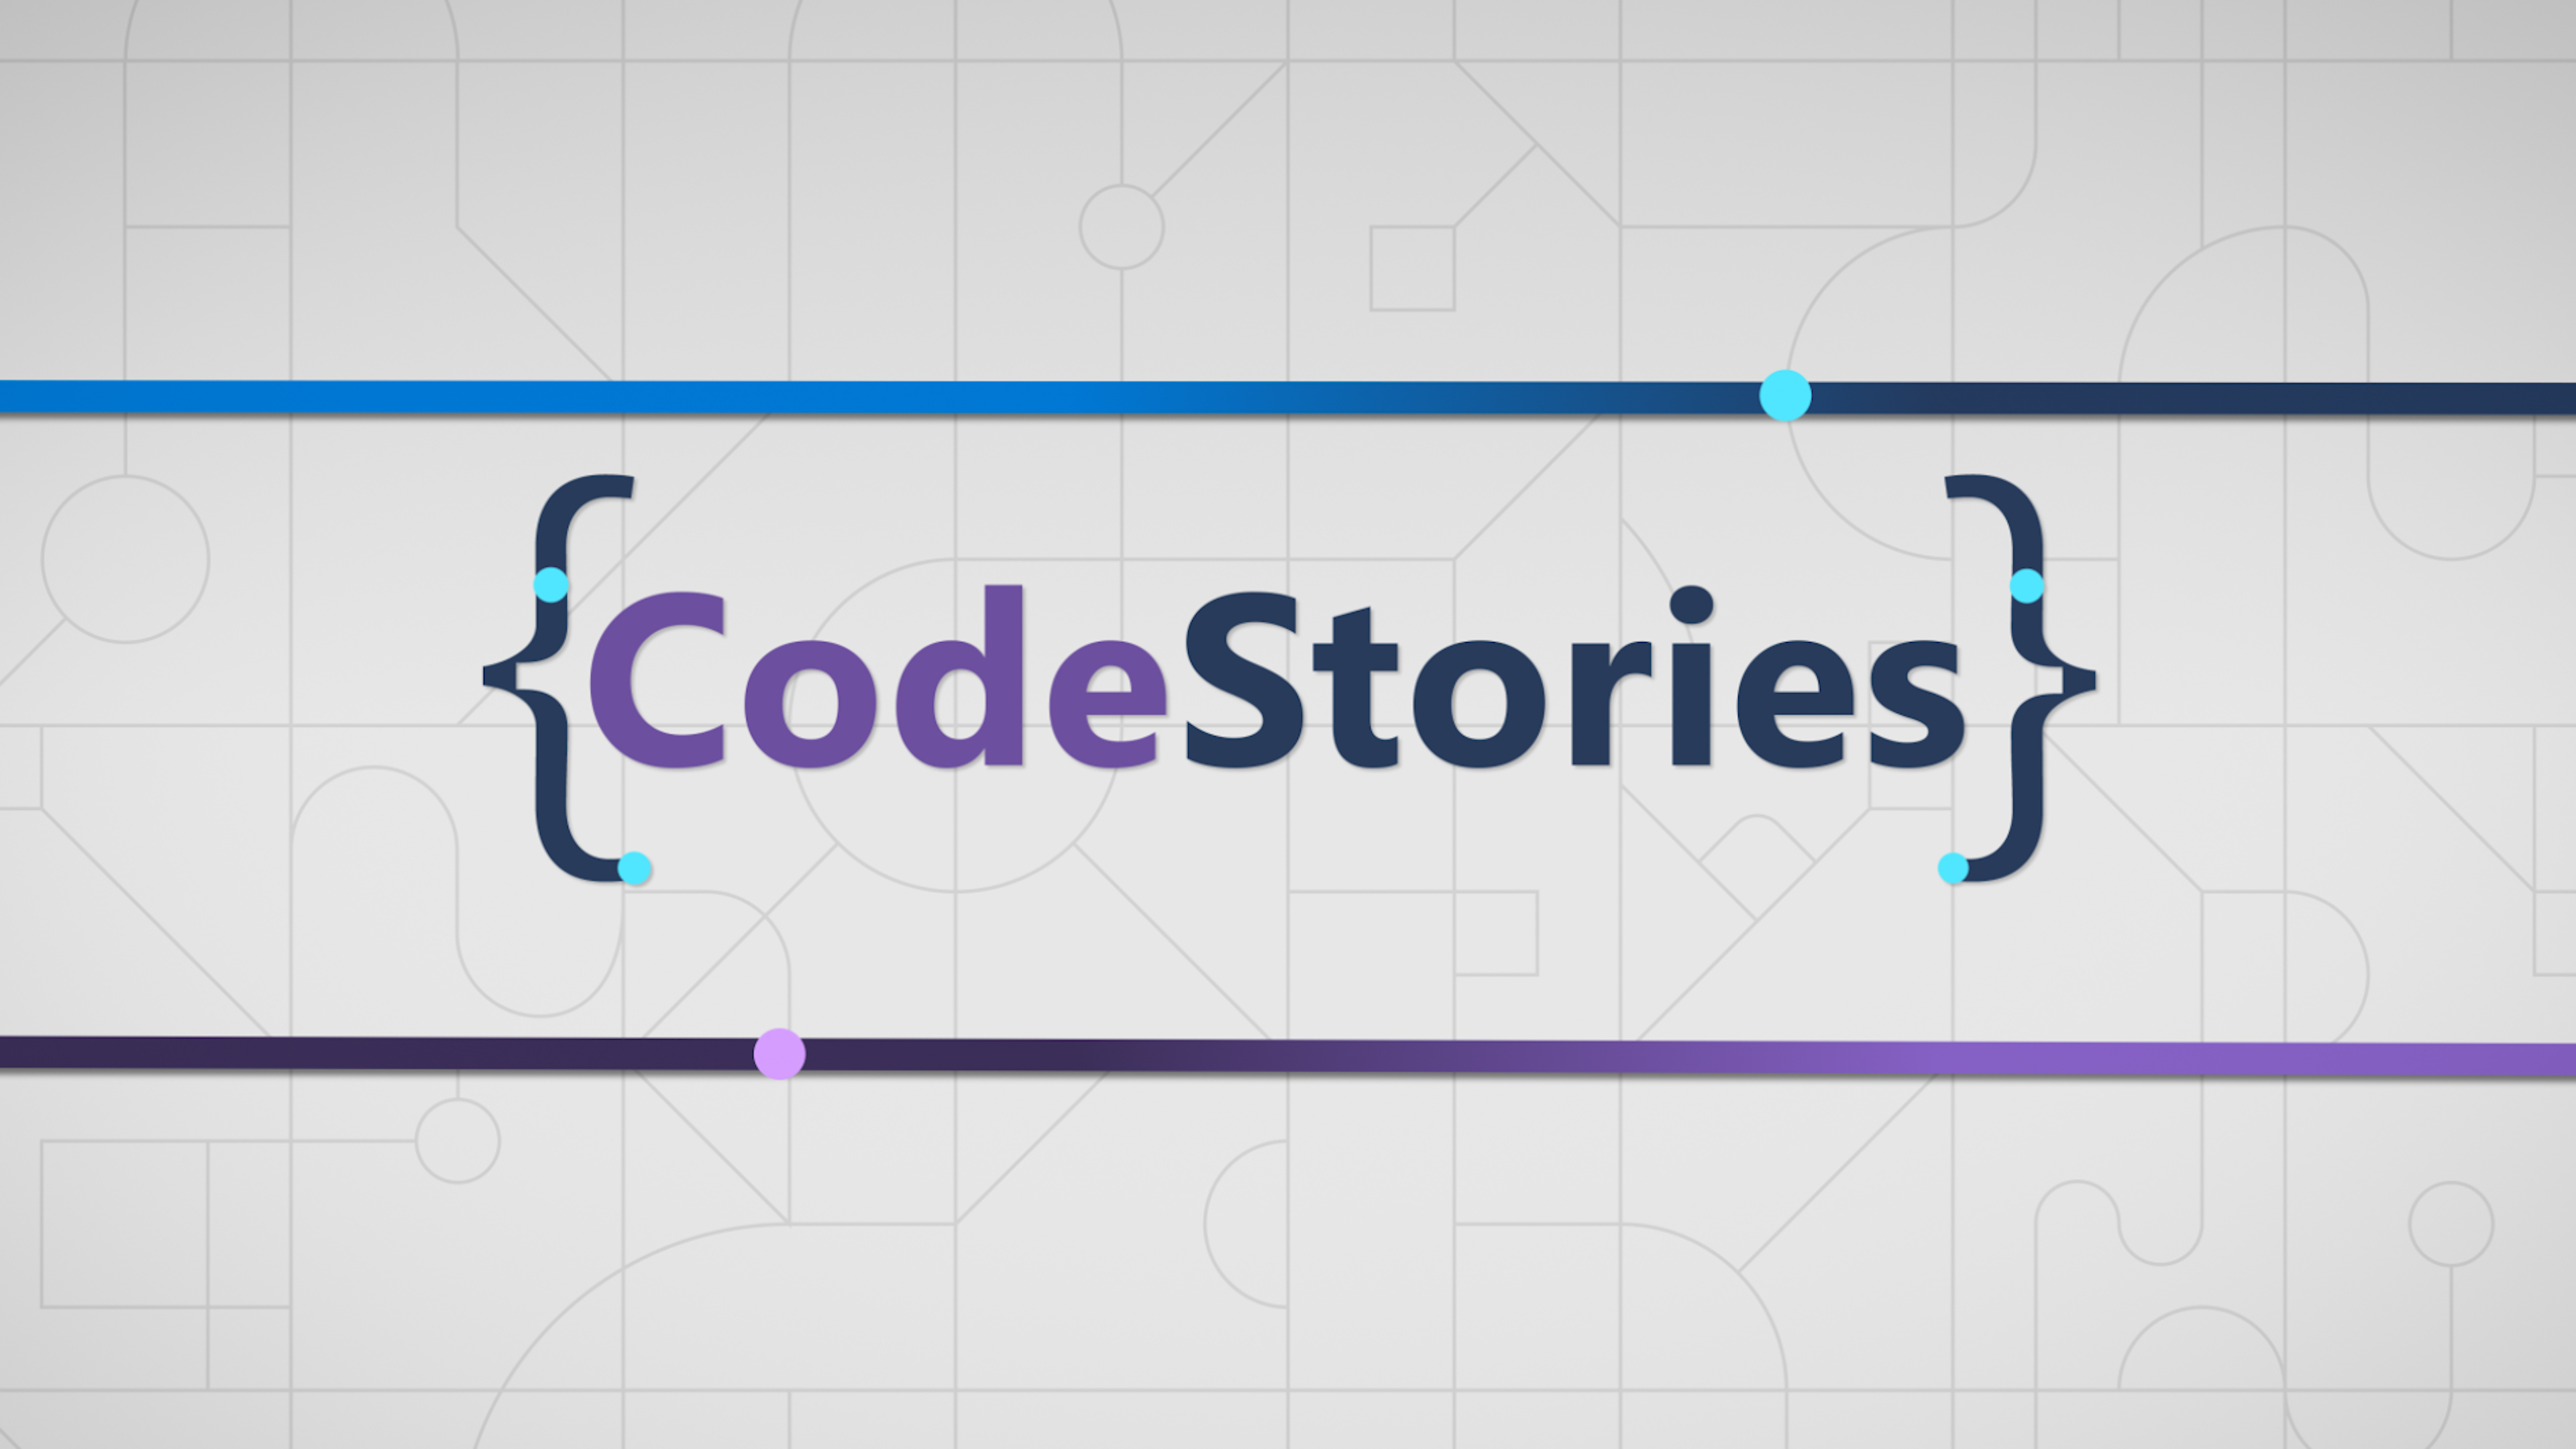 CodeStories 로고 아트워크